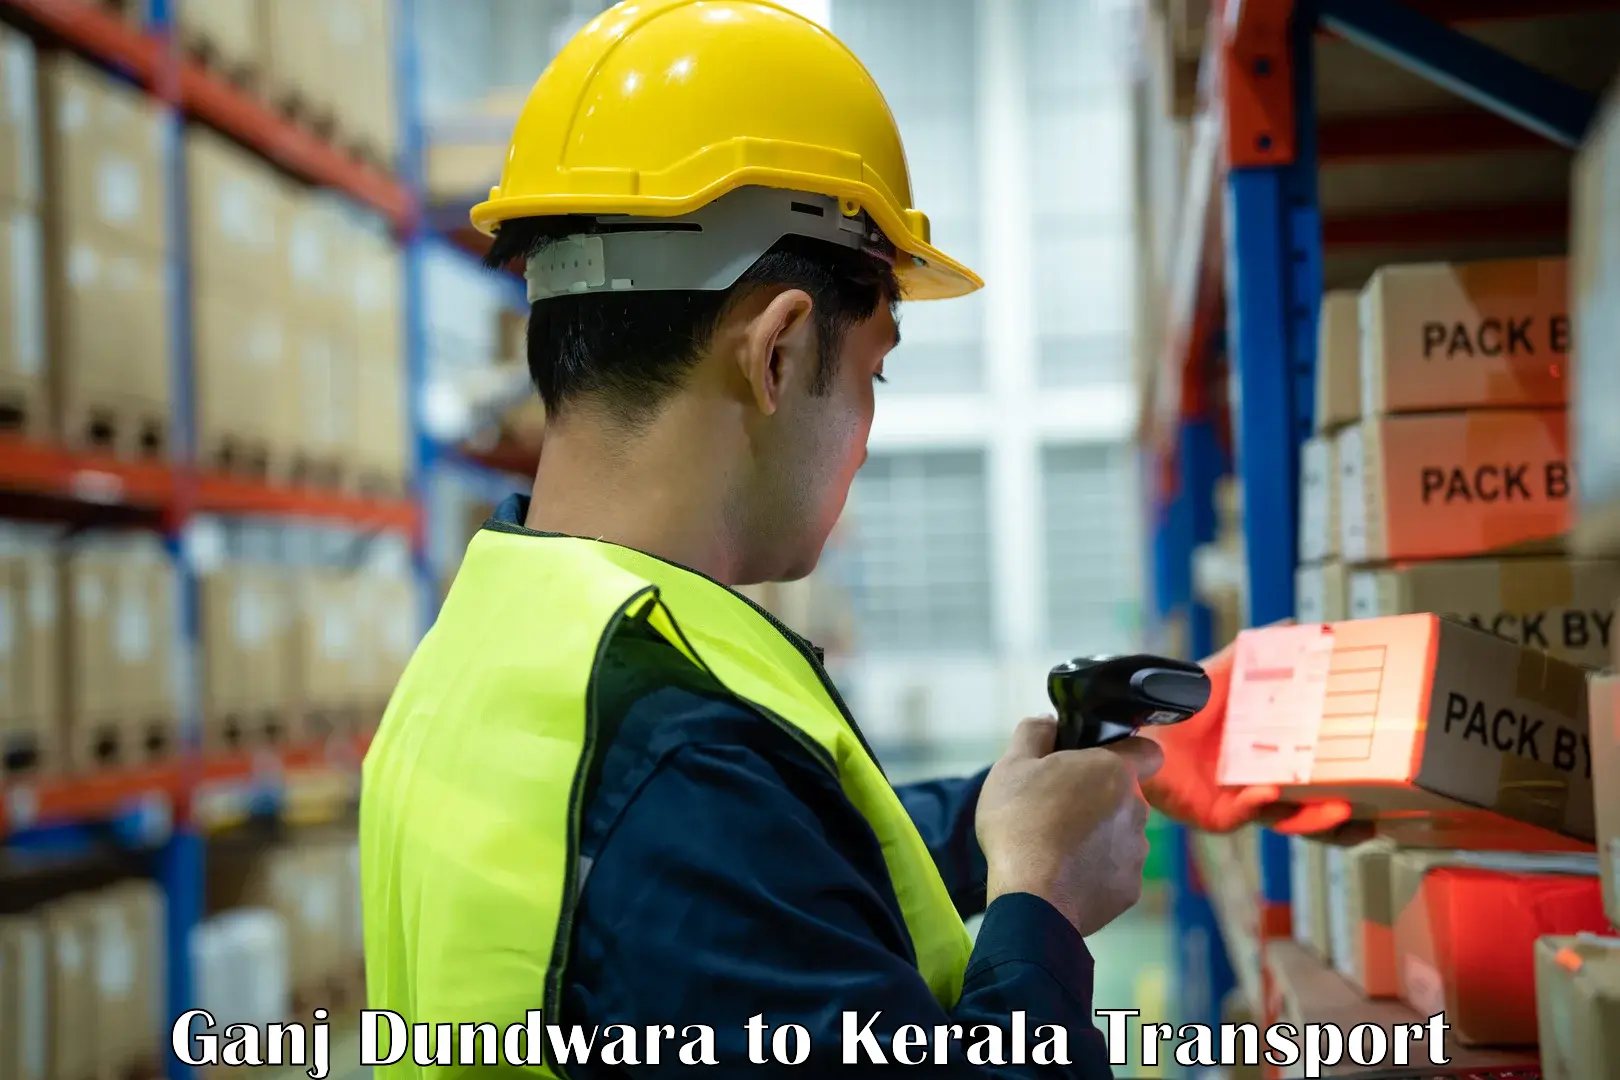 Part load transport service in India Ganj Dundwara to Kerala